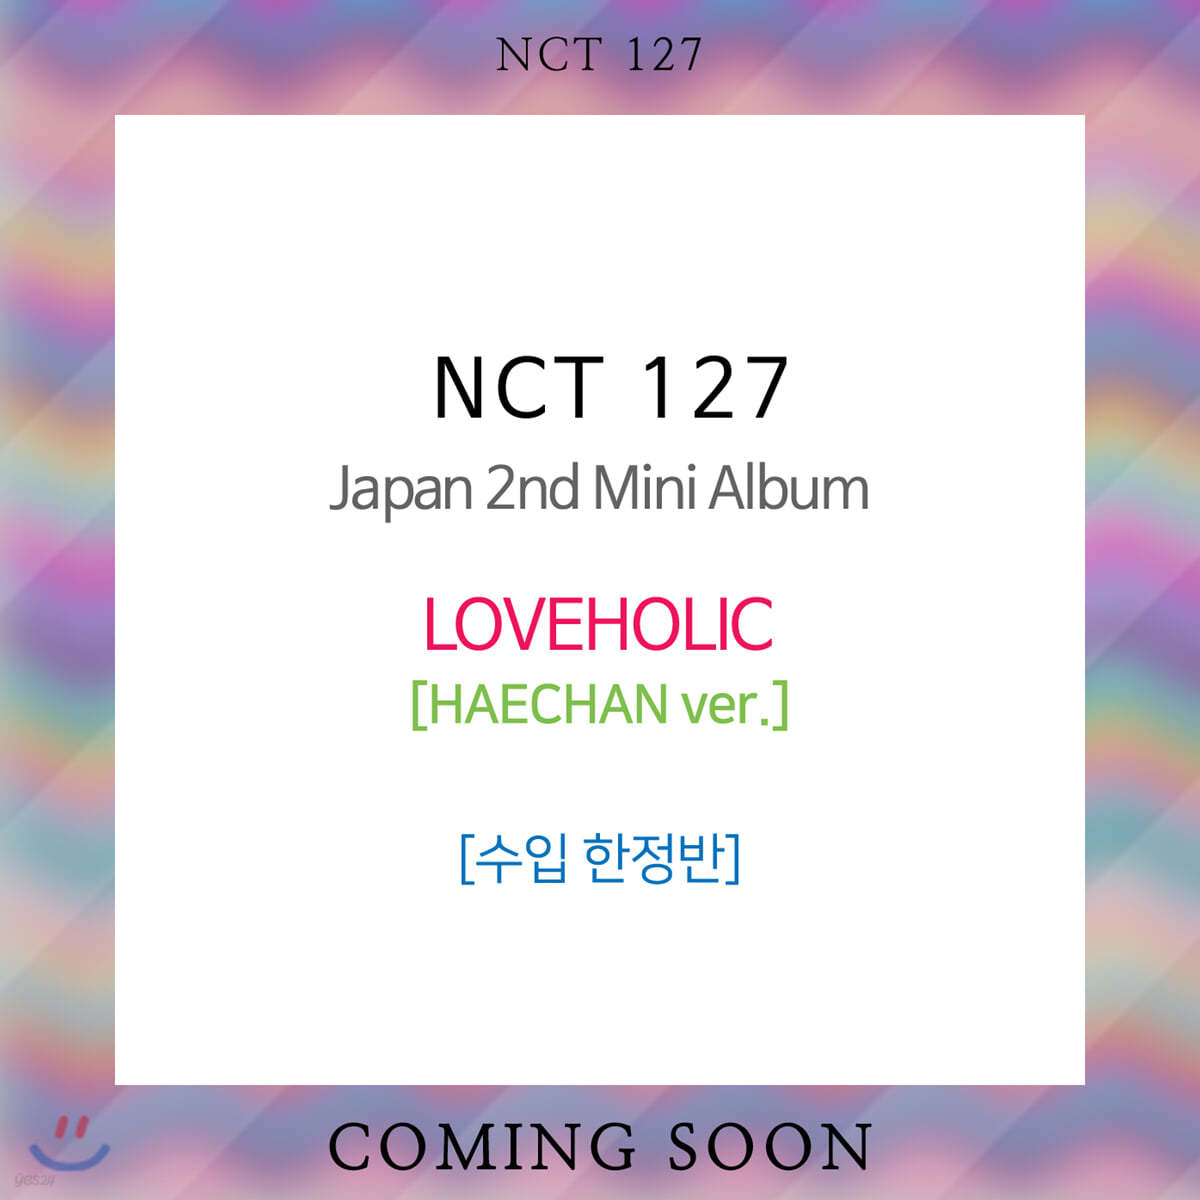 엔시티 127 (NCT 127) - Japan 2nd Mini Album : LOVEHOLIC [한정반] [HAECHAN ver.]